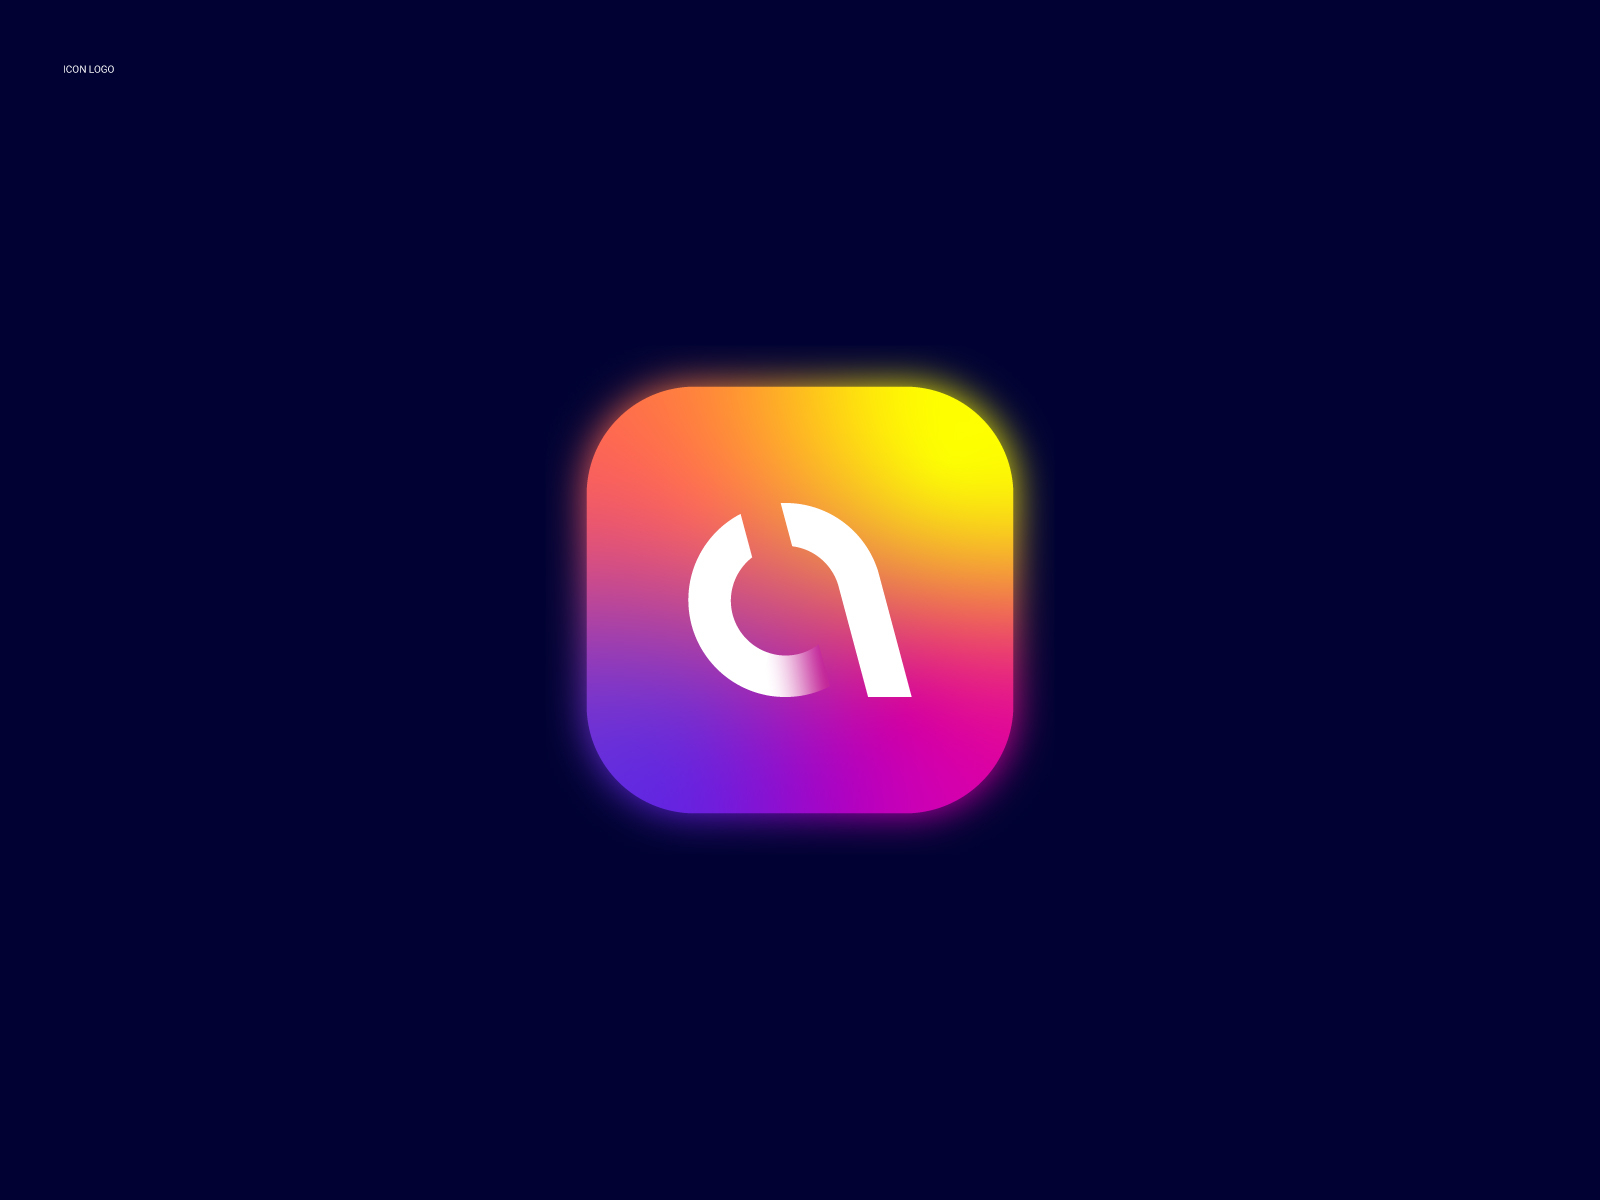 App Icon Logo Design - A Letter by Abdul Gaffar on Dribbble